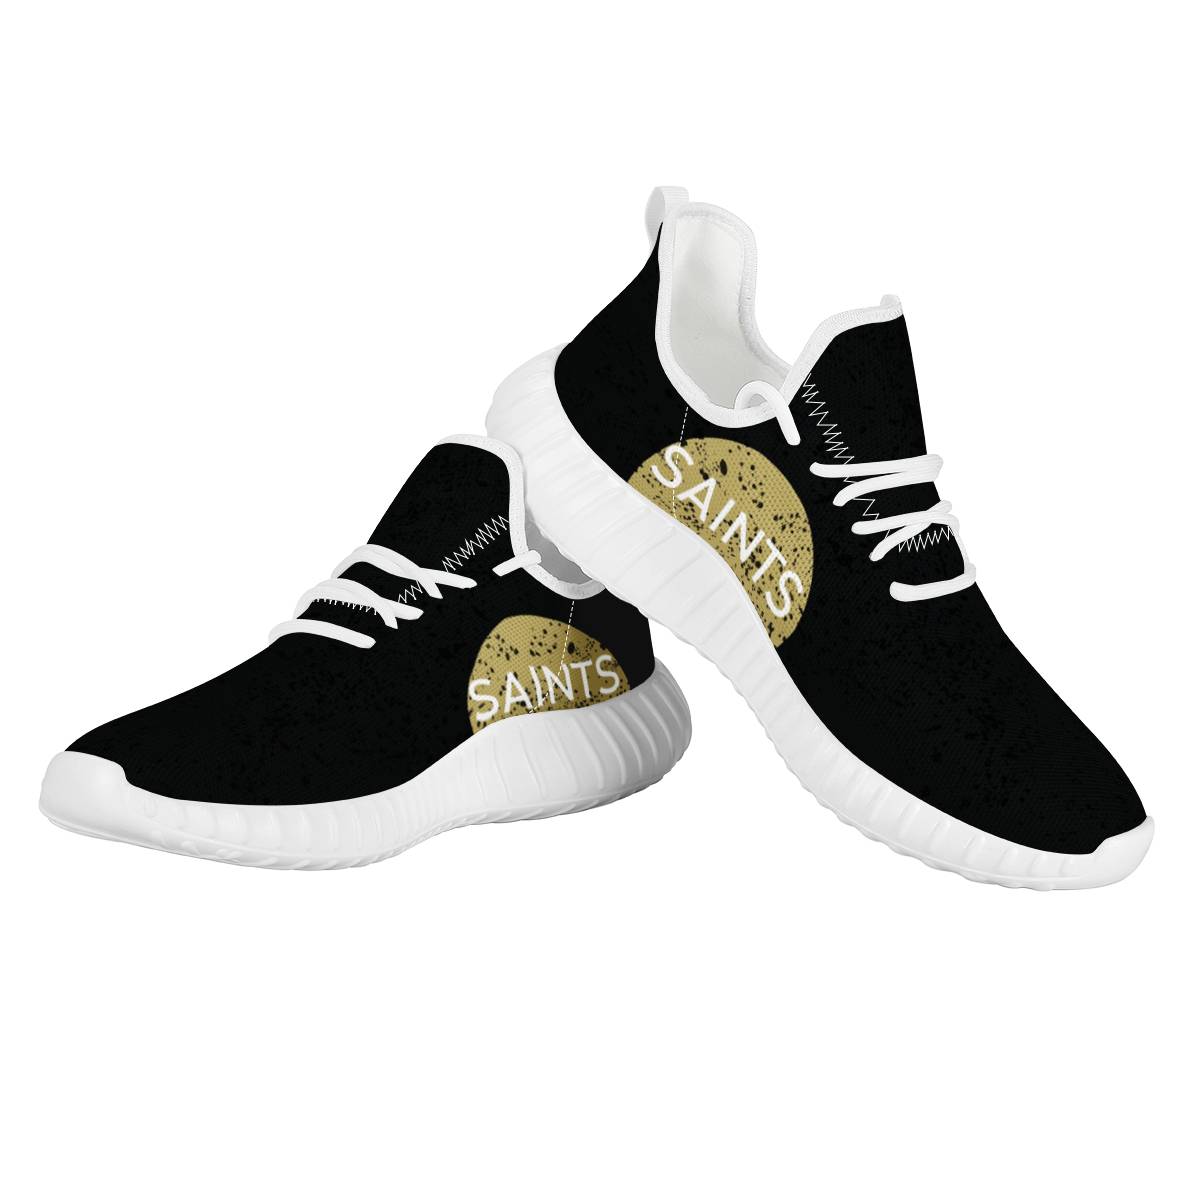 Men's New Orleans Saints Mesh Knit Sneakers/Shoes 011